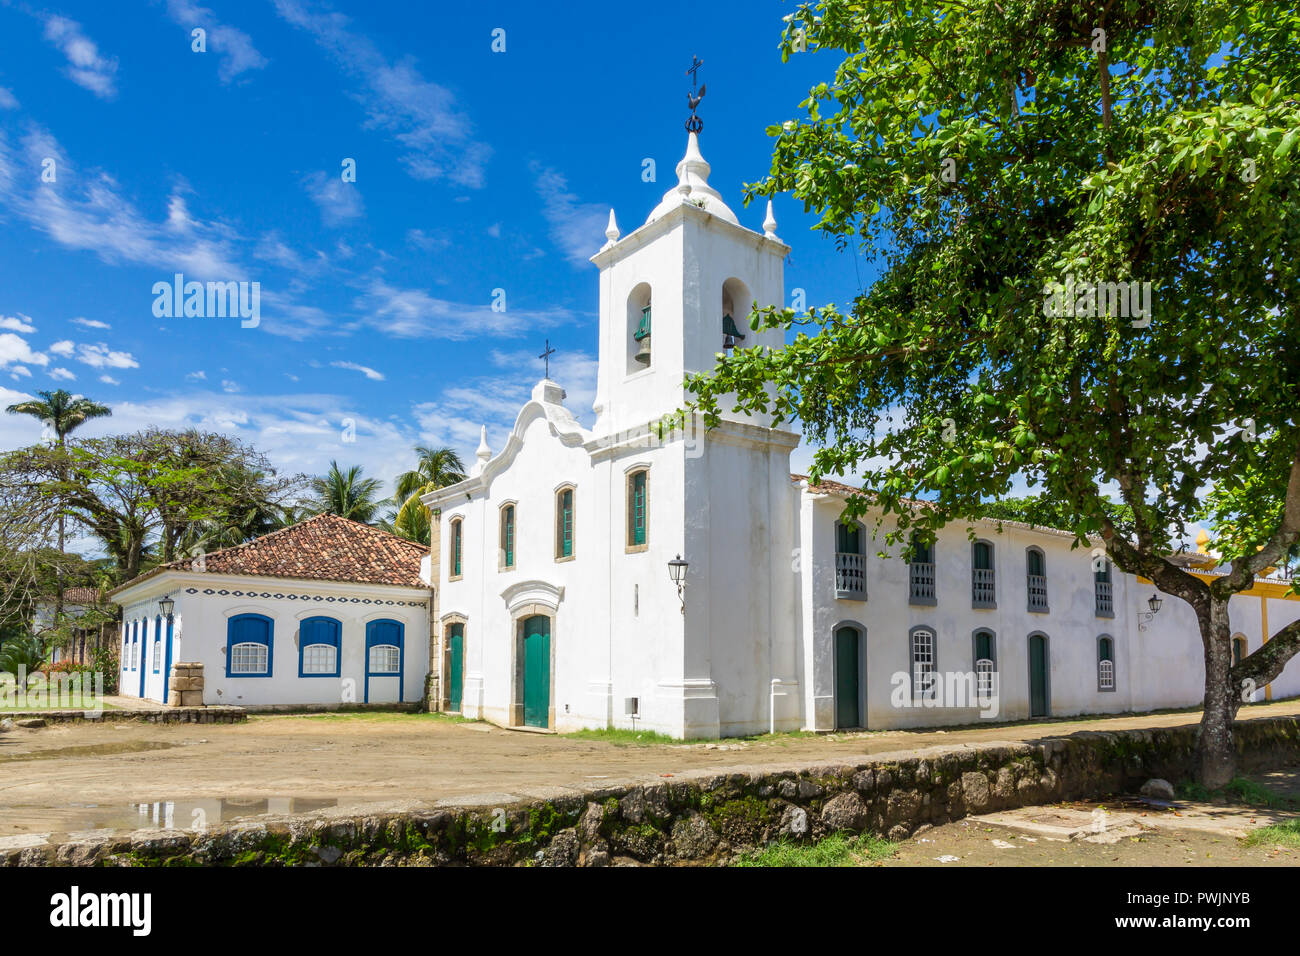 Nossa Senhora das Dores Church, Paraty, Brazil, South America Stock Photo